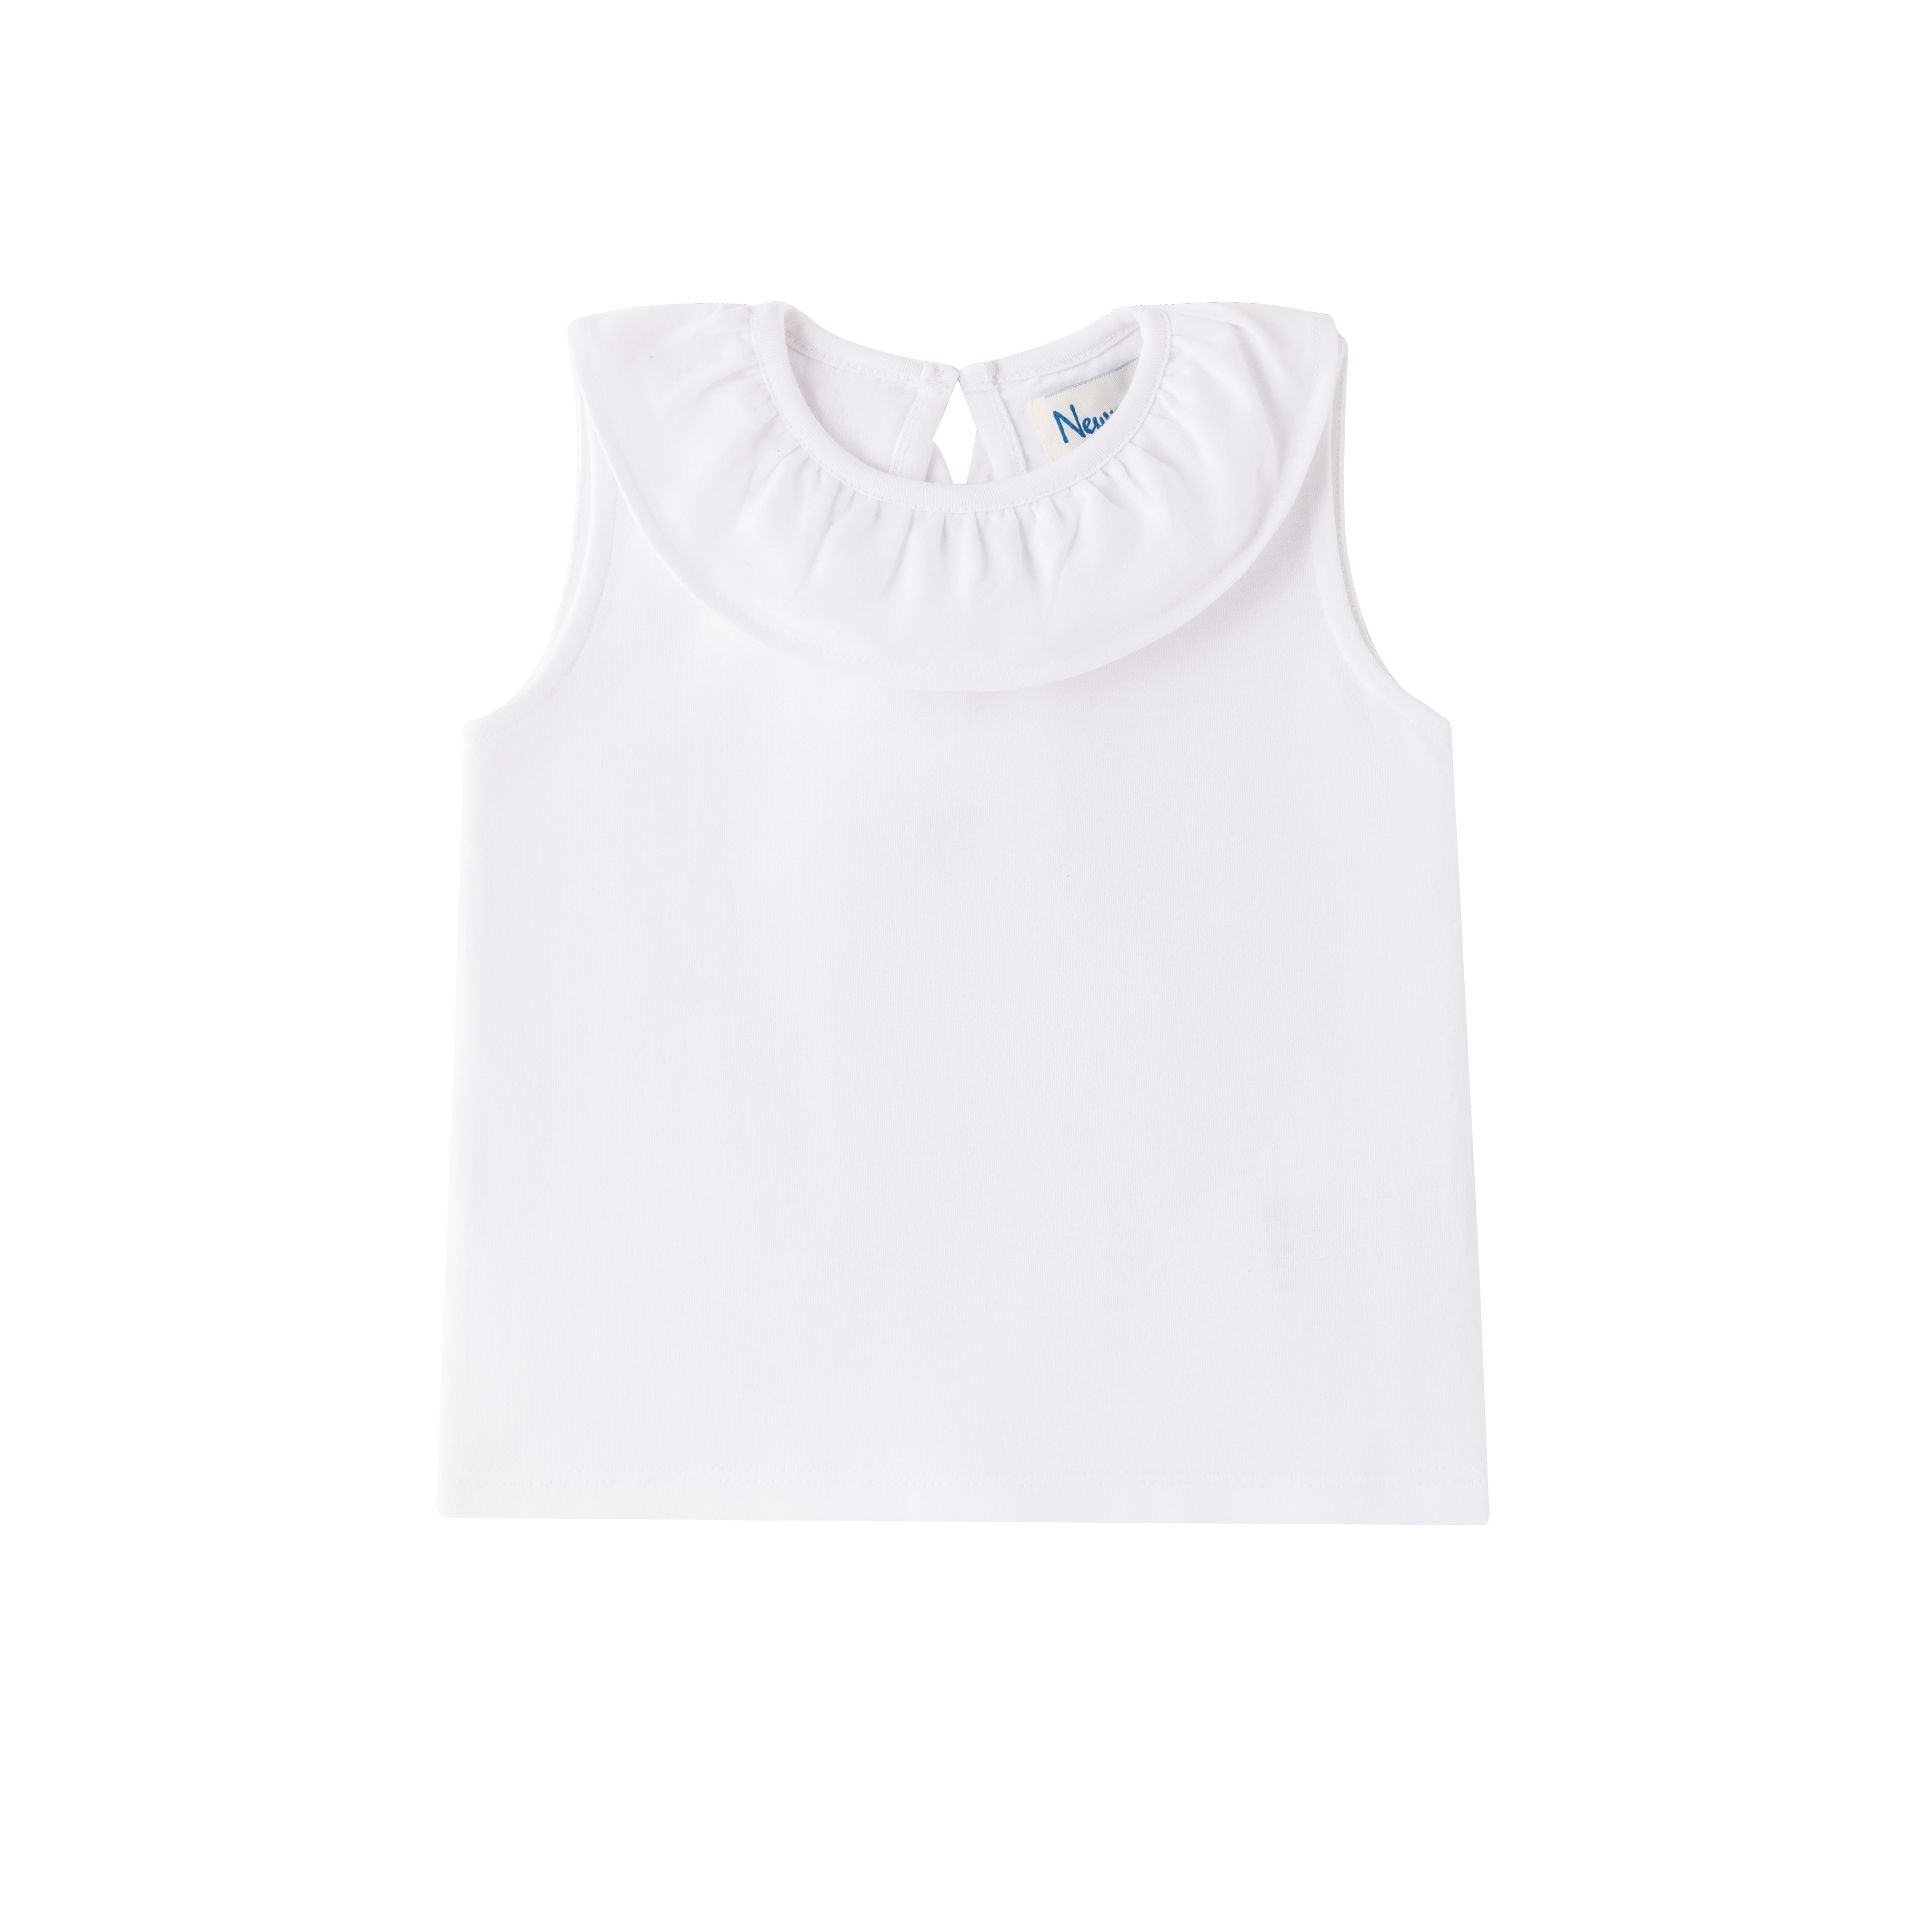 Camiseta de algodón con cuello volante bebé NWS